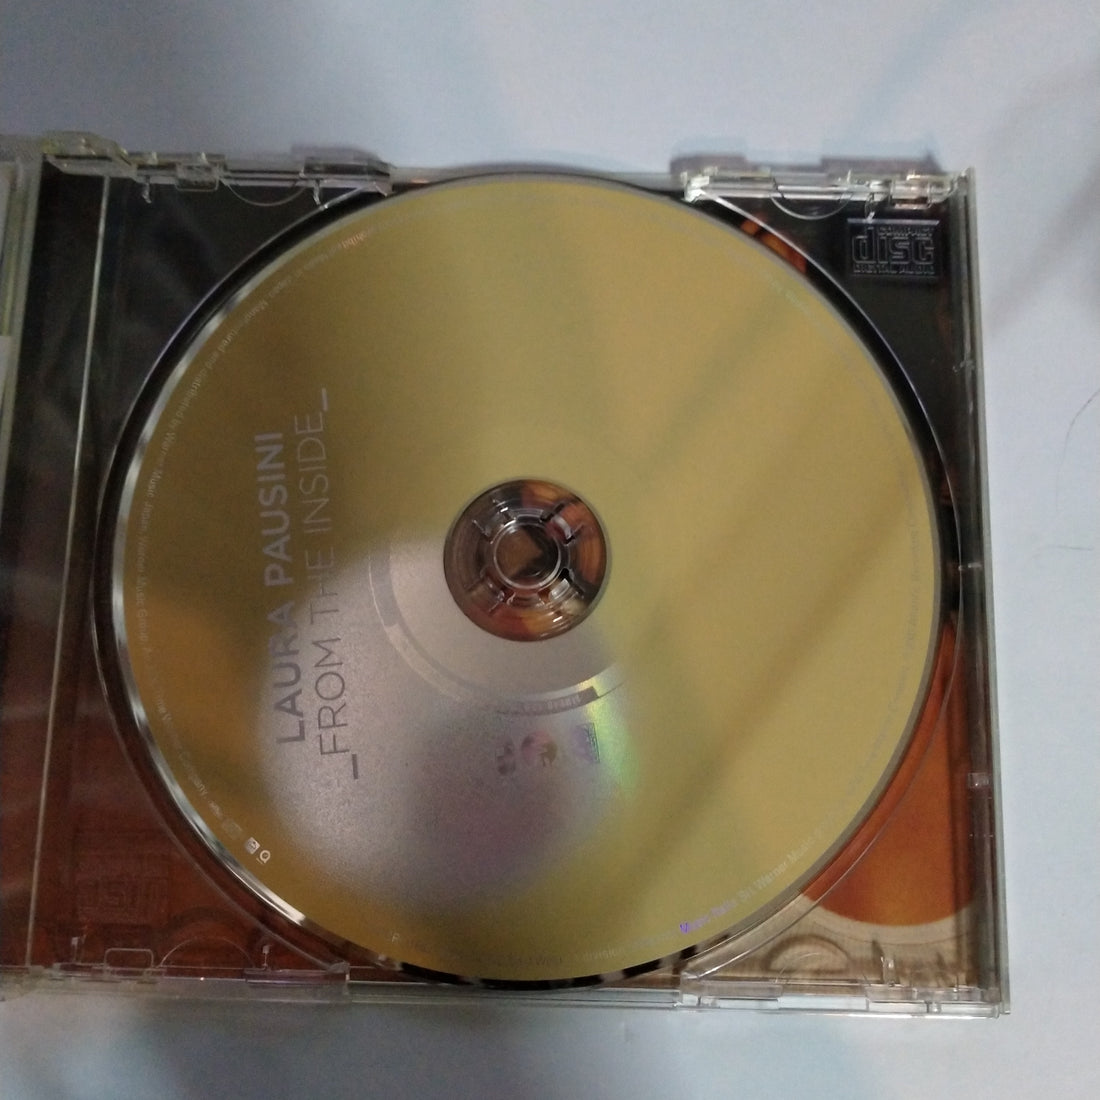 Laura Pausini - From The Inside - Vinyl LP em 2023